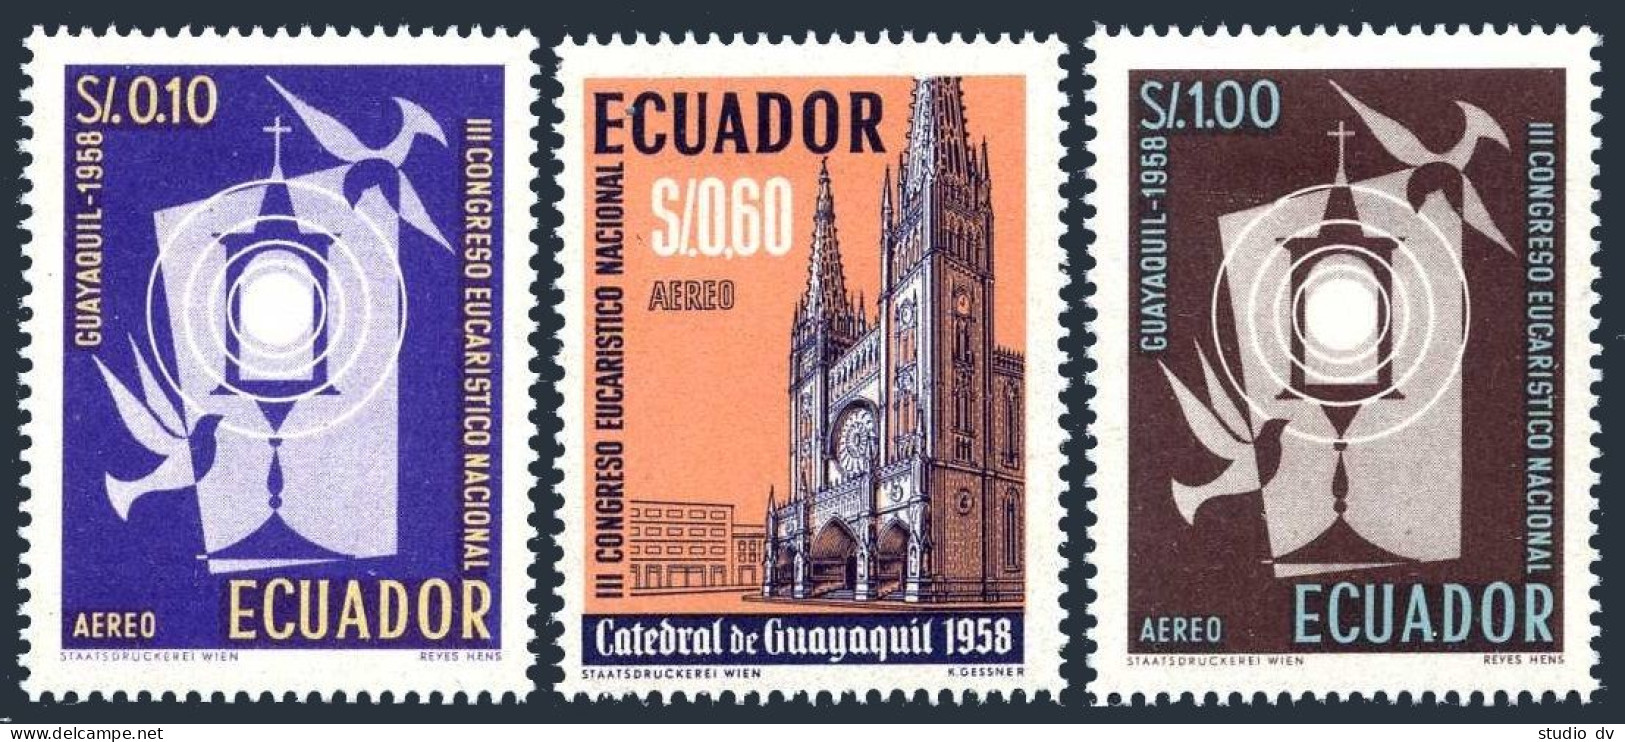 Ecuador C327-C329, Hinged. Michel 974-976. National Eucharist Congress, 1958. - Equateur